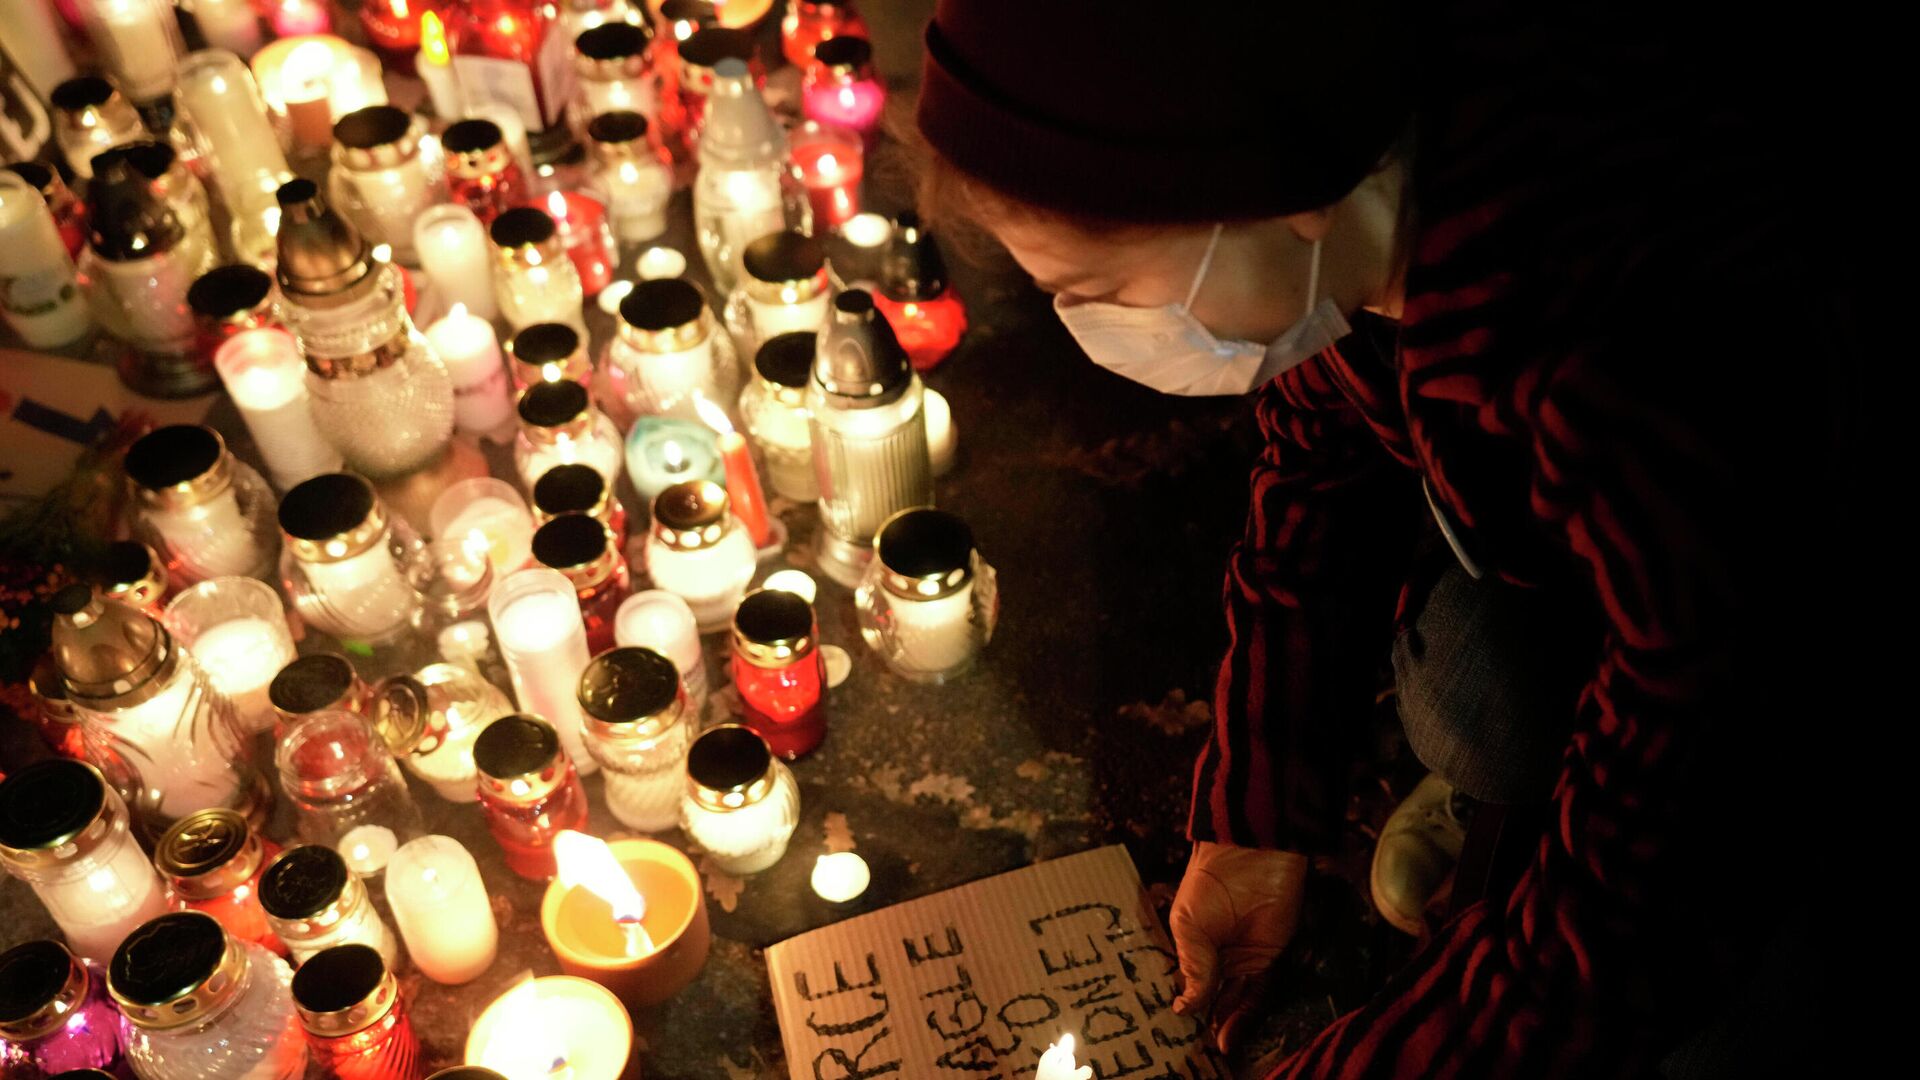 Žmonės uždega žvakutes 22-ąją nėštumo savaitę Lenkijoje mirusios moters atminimui - Sputnik Lietuva, 1920, 03.11.2021